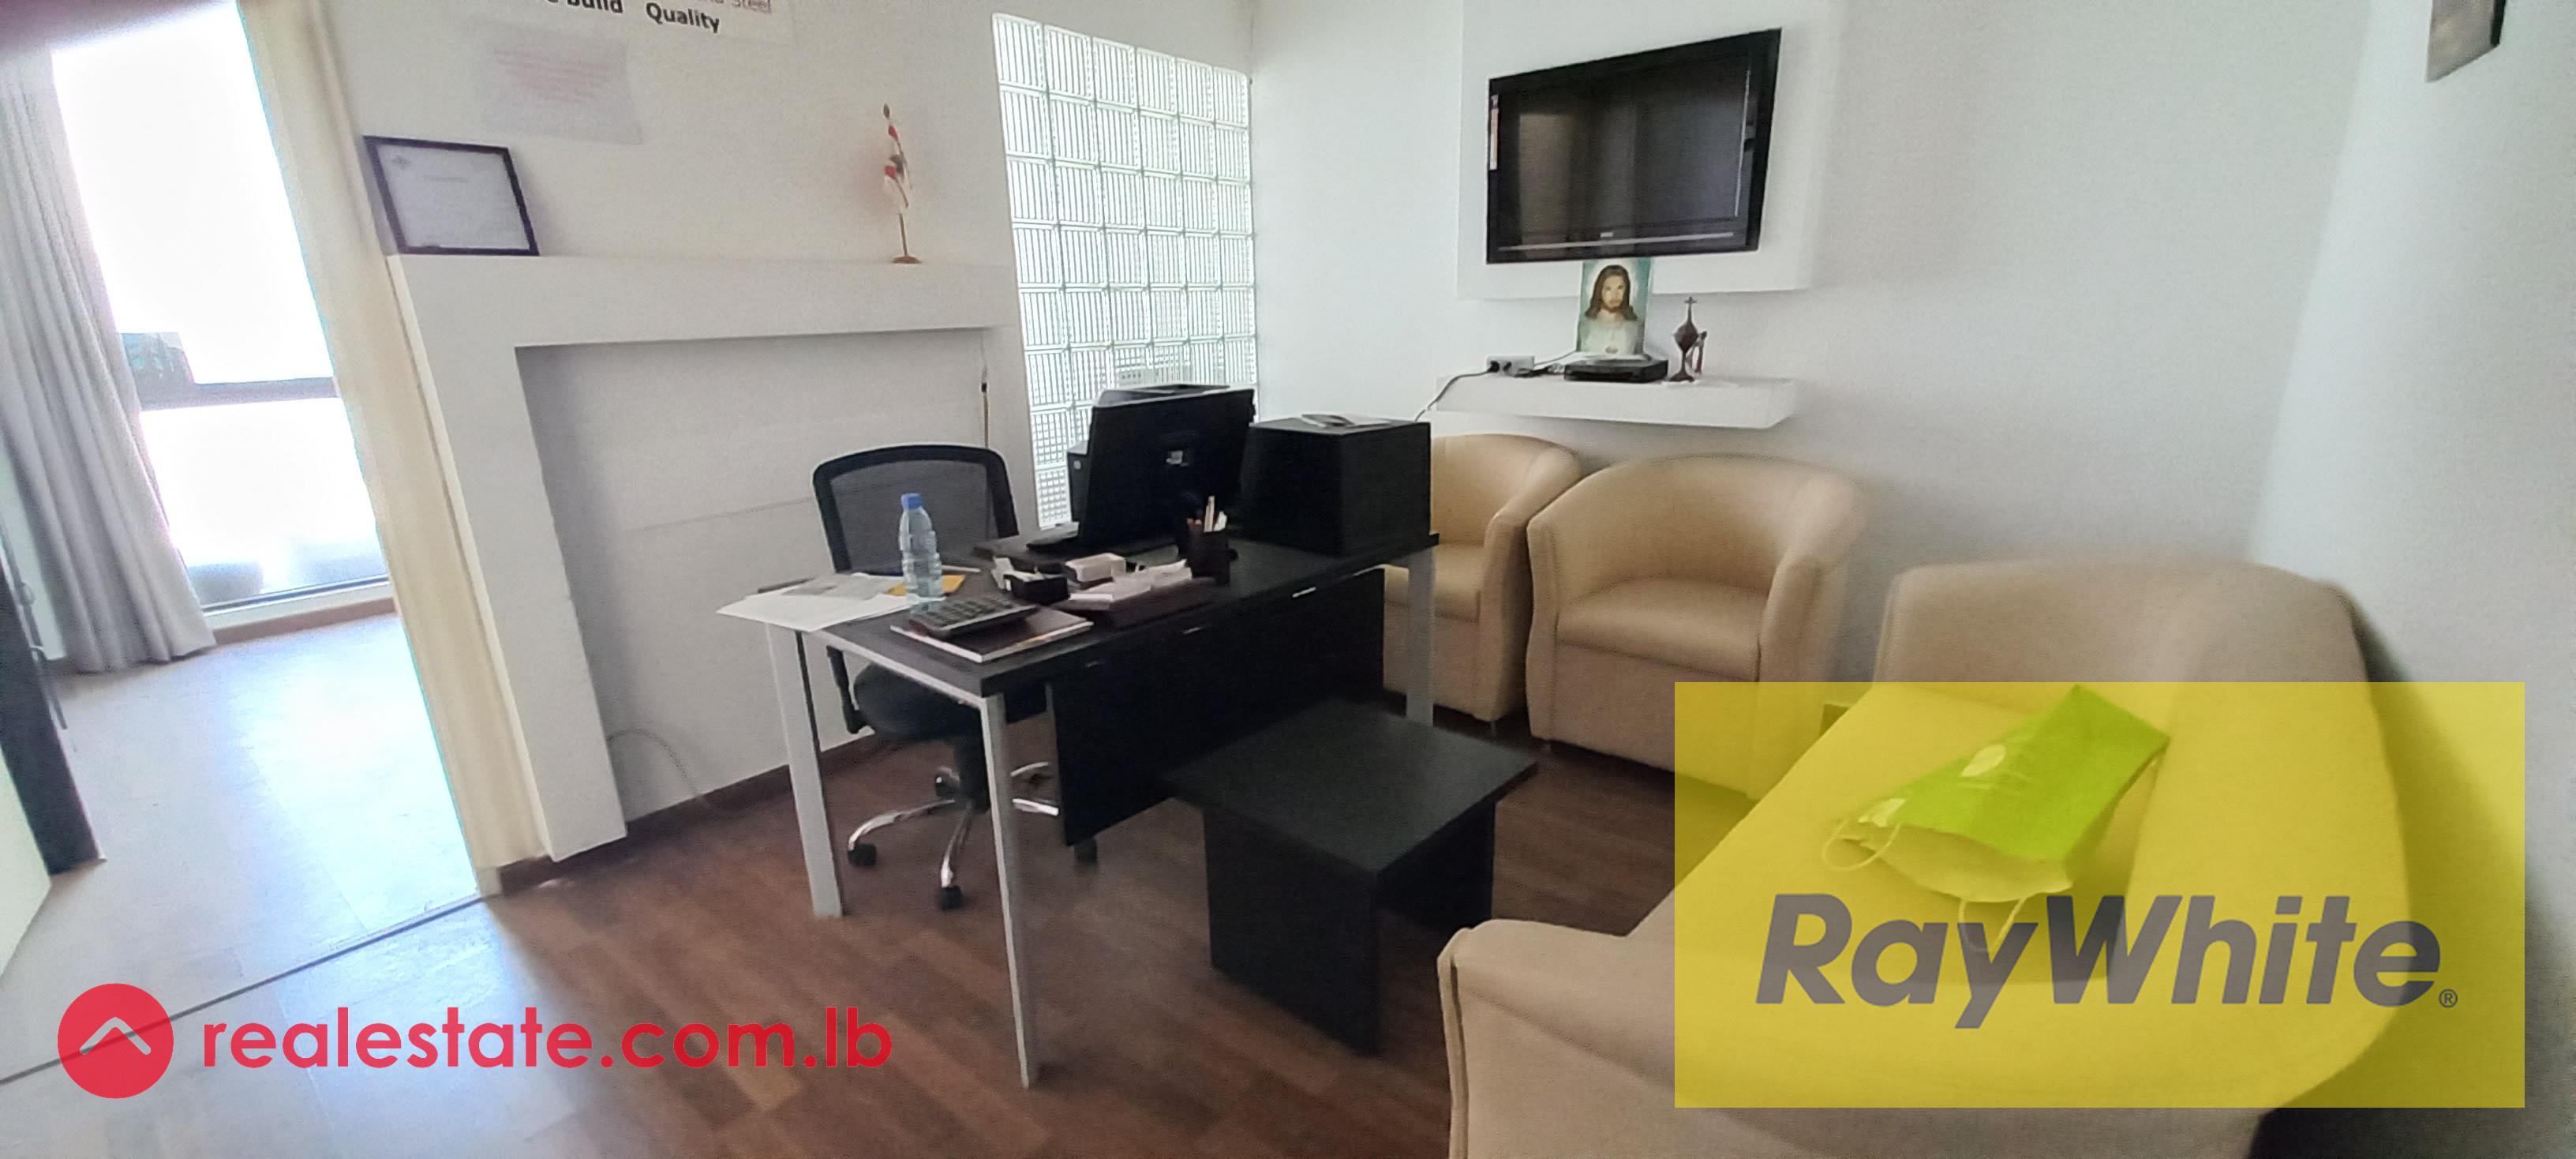 Furnished Office on Jal El Dib highway for rent